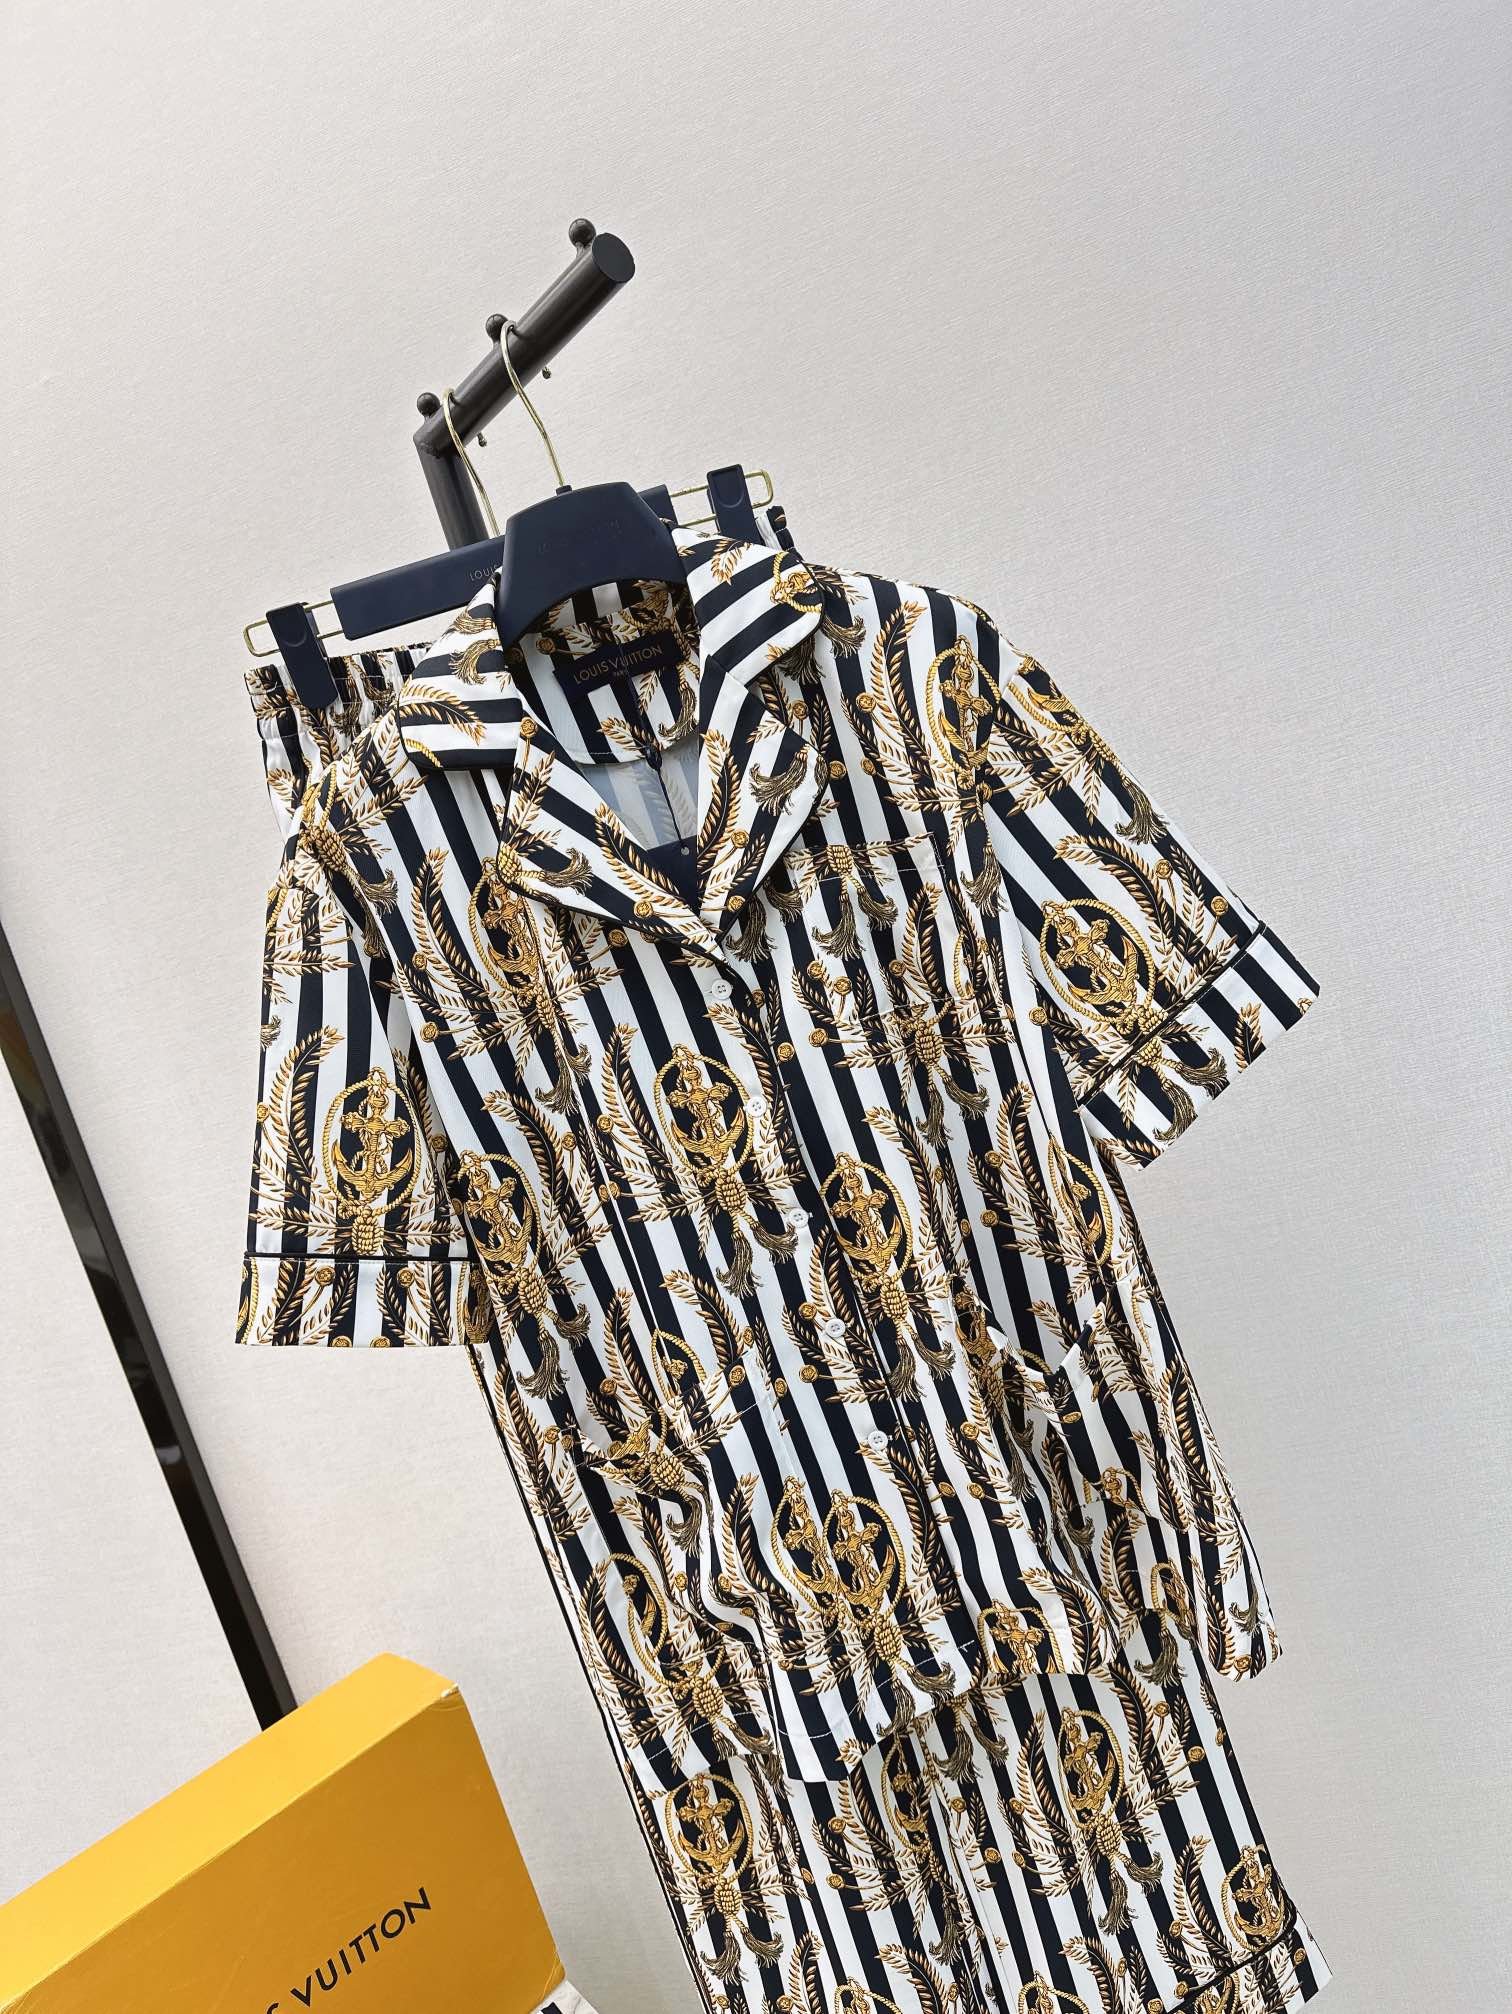 L家24Ss春夏最新款航海系列竖条纹睡衣风套装采用活性转印工艺印花渗透的印花非常有质感翻领长袖衬衫+系绳